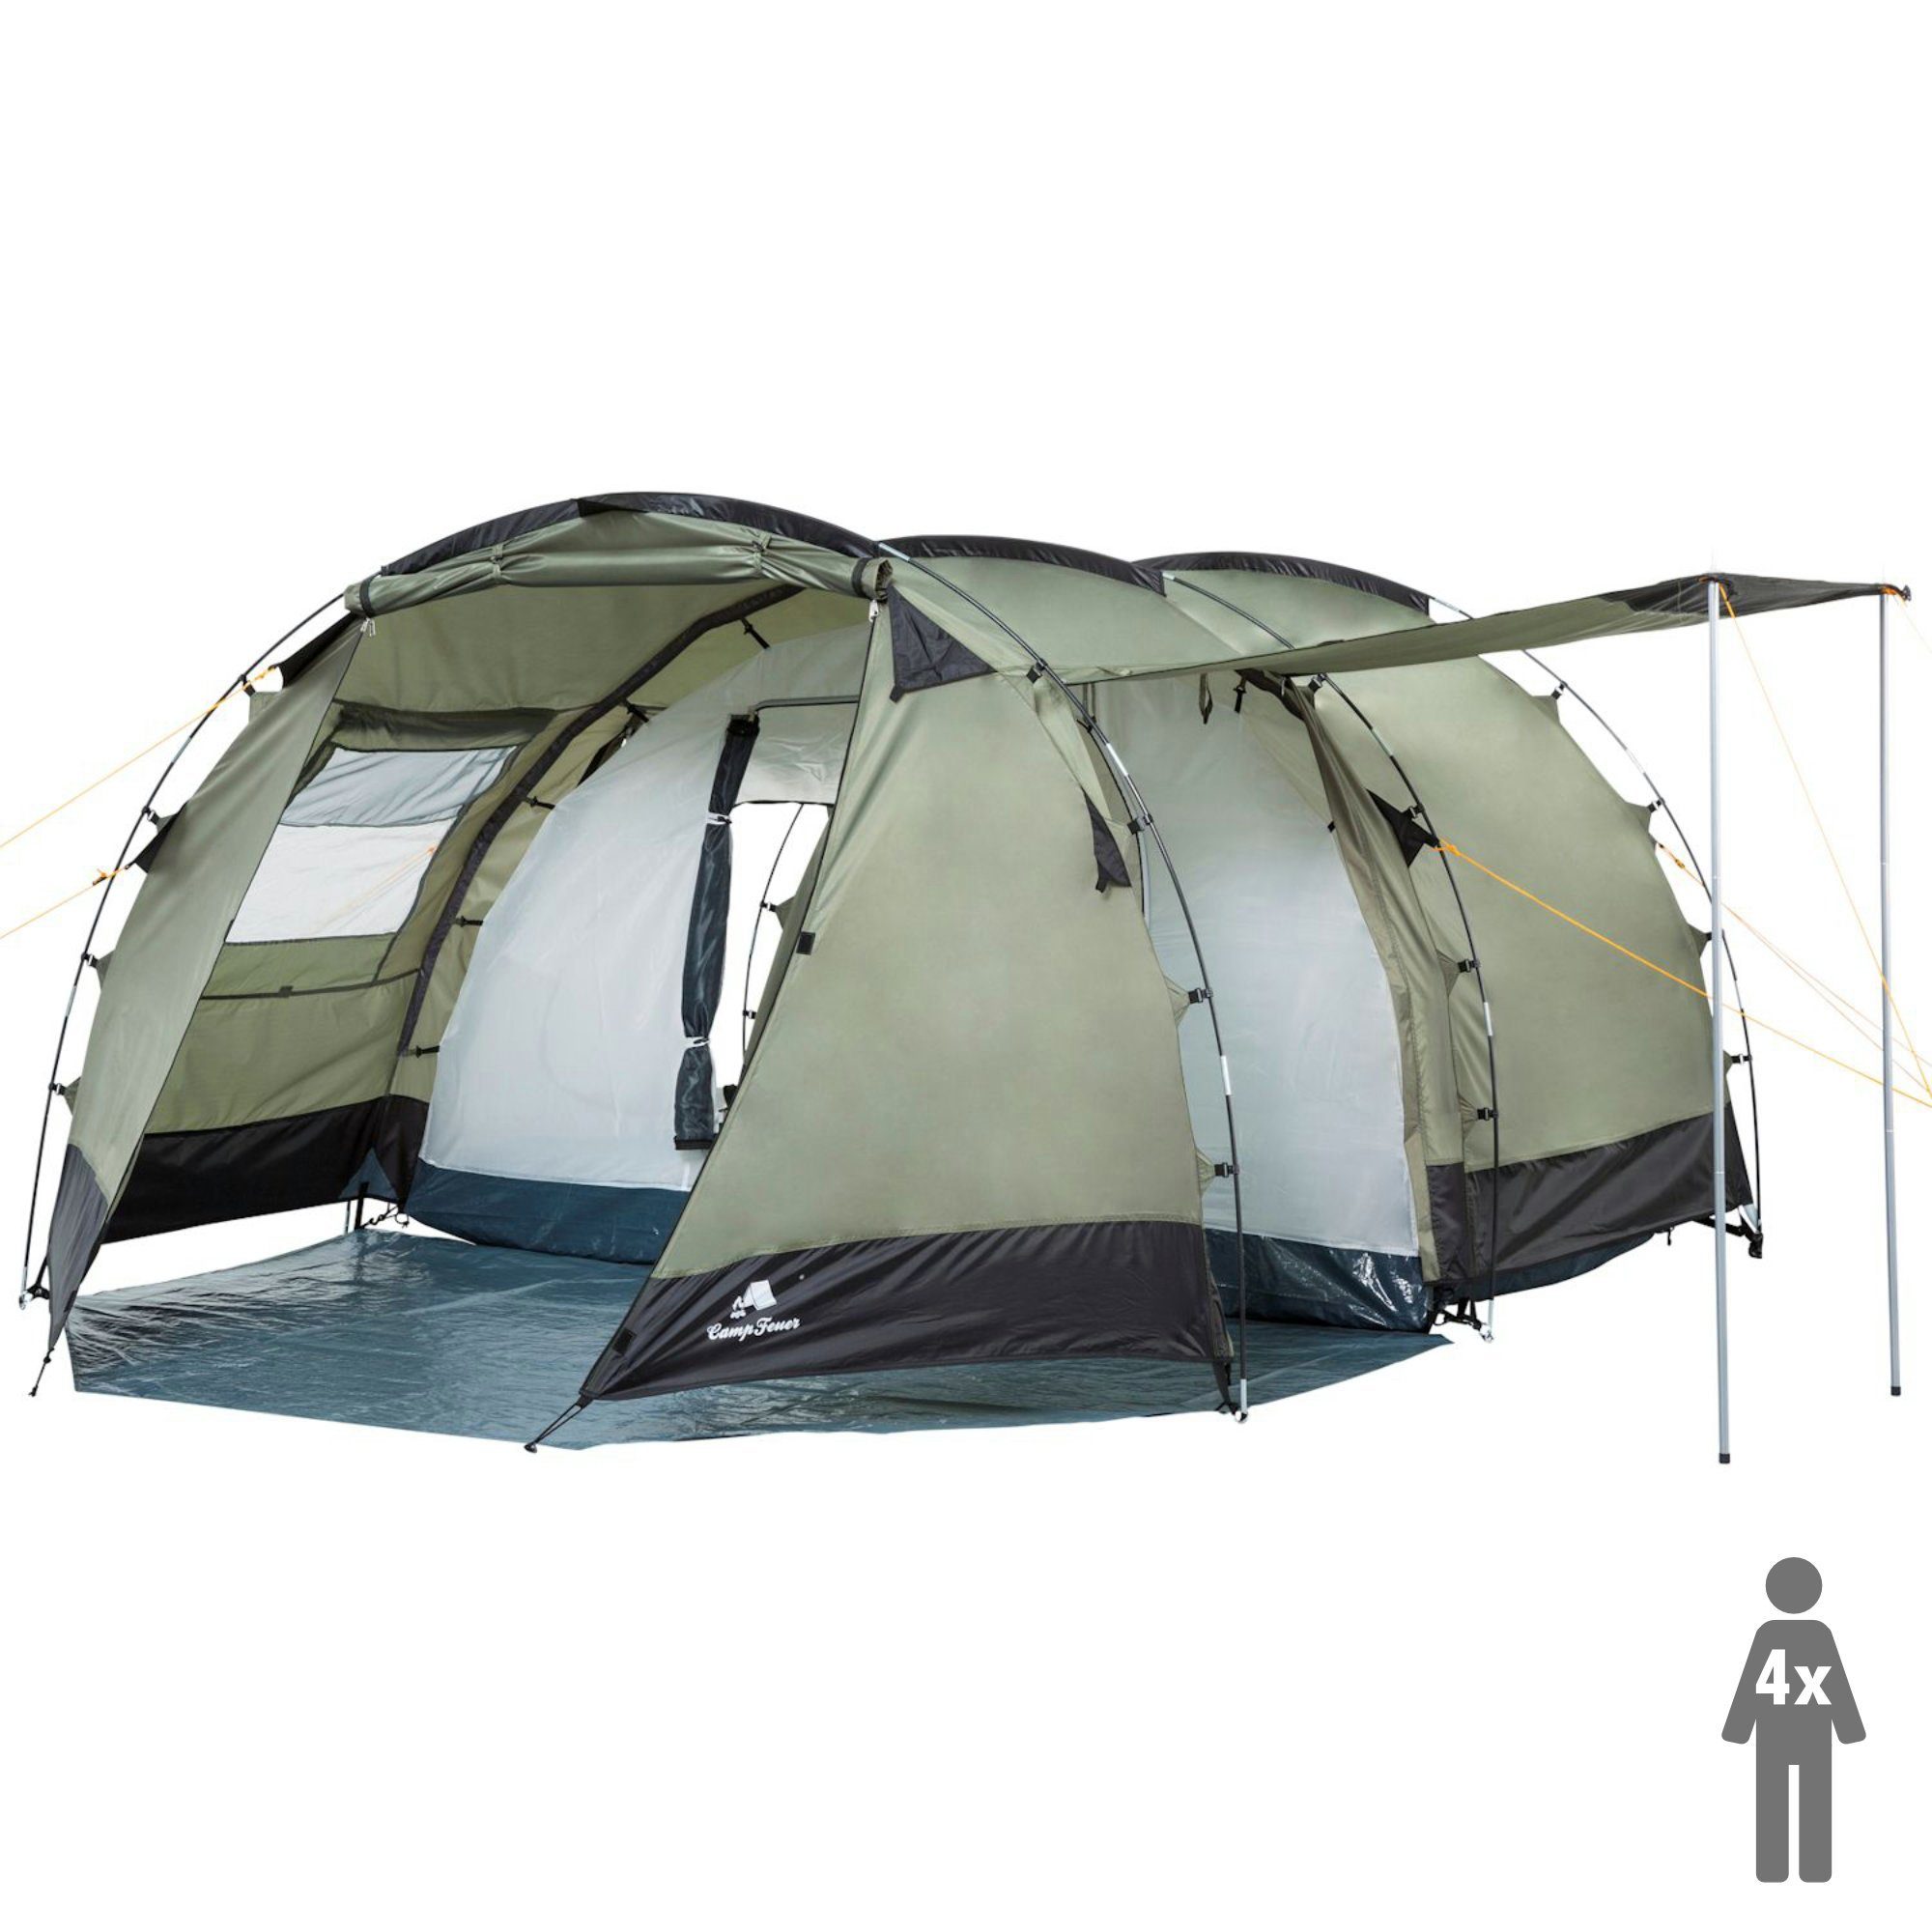 CampFeuer Tunnelzelt Zelt Super+ für 4 Personen, Olivgrün / Schwarz, 3000 mm Wassersäule, Personen: 4